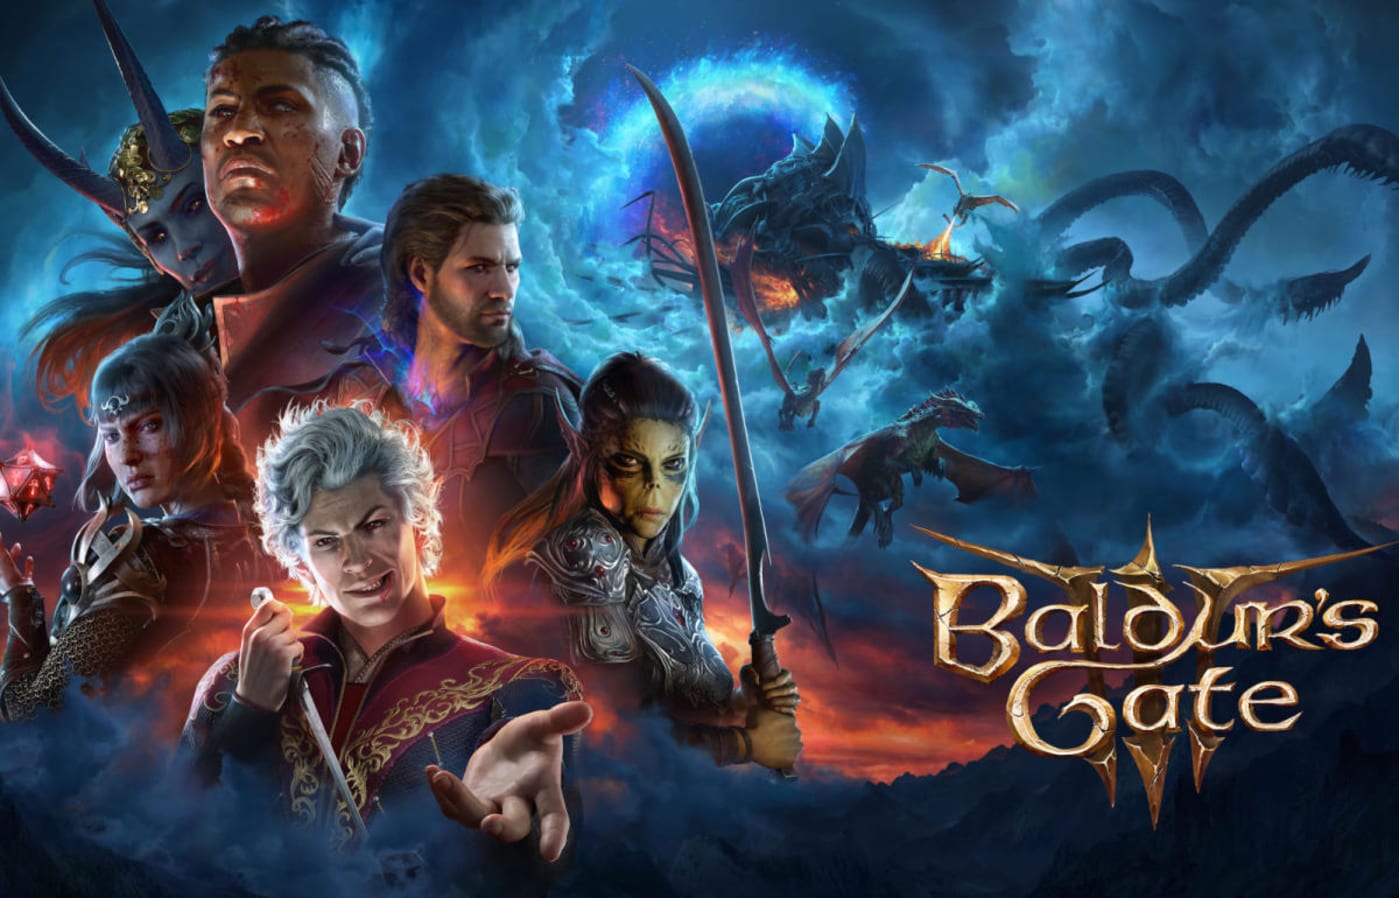 Baldur's Gate 3 developer confirms it won't make the sequel